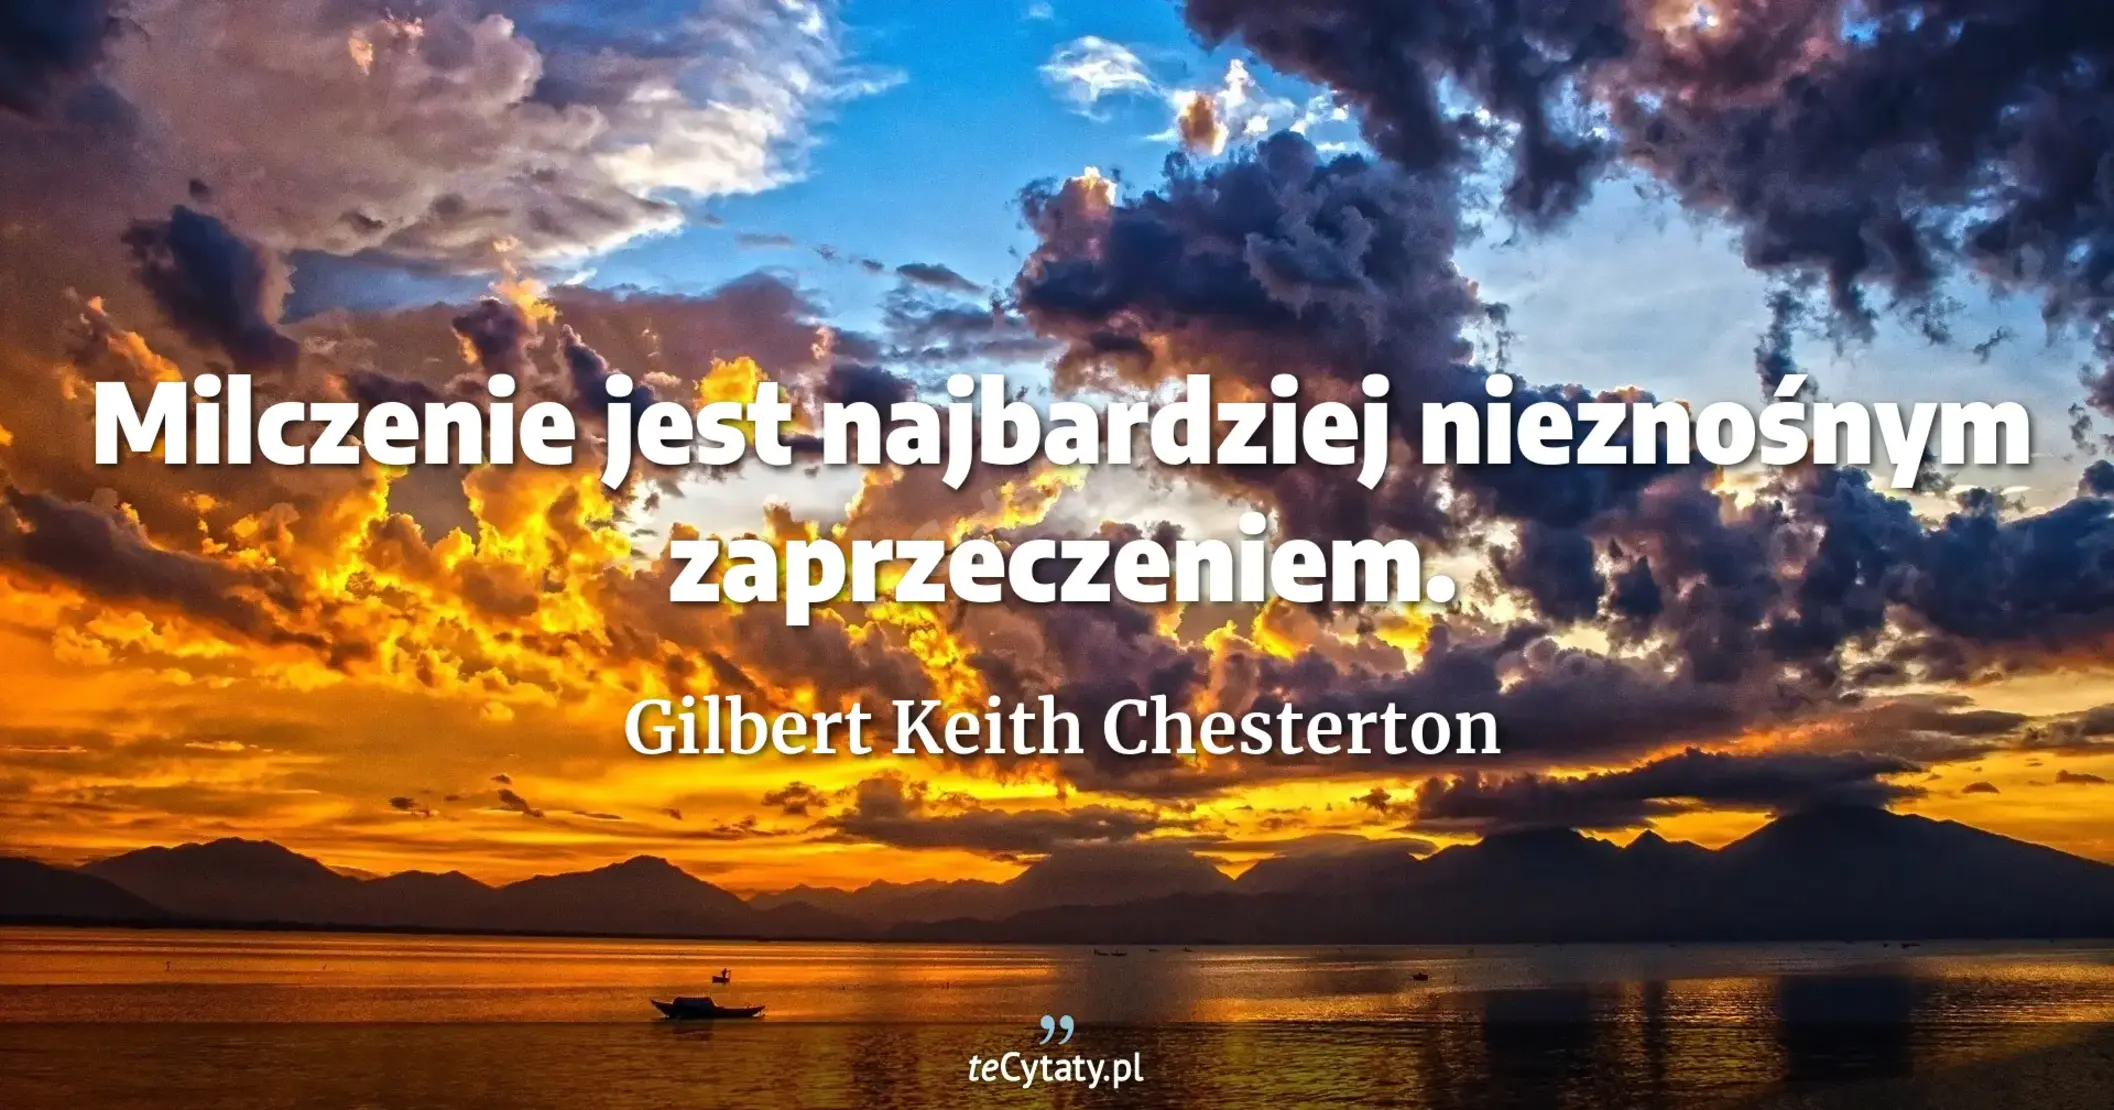 Milczenie jest najbardziej nieznośnym zaprzeczeniem. - Gilbert Keith Chesterton